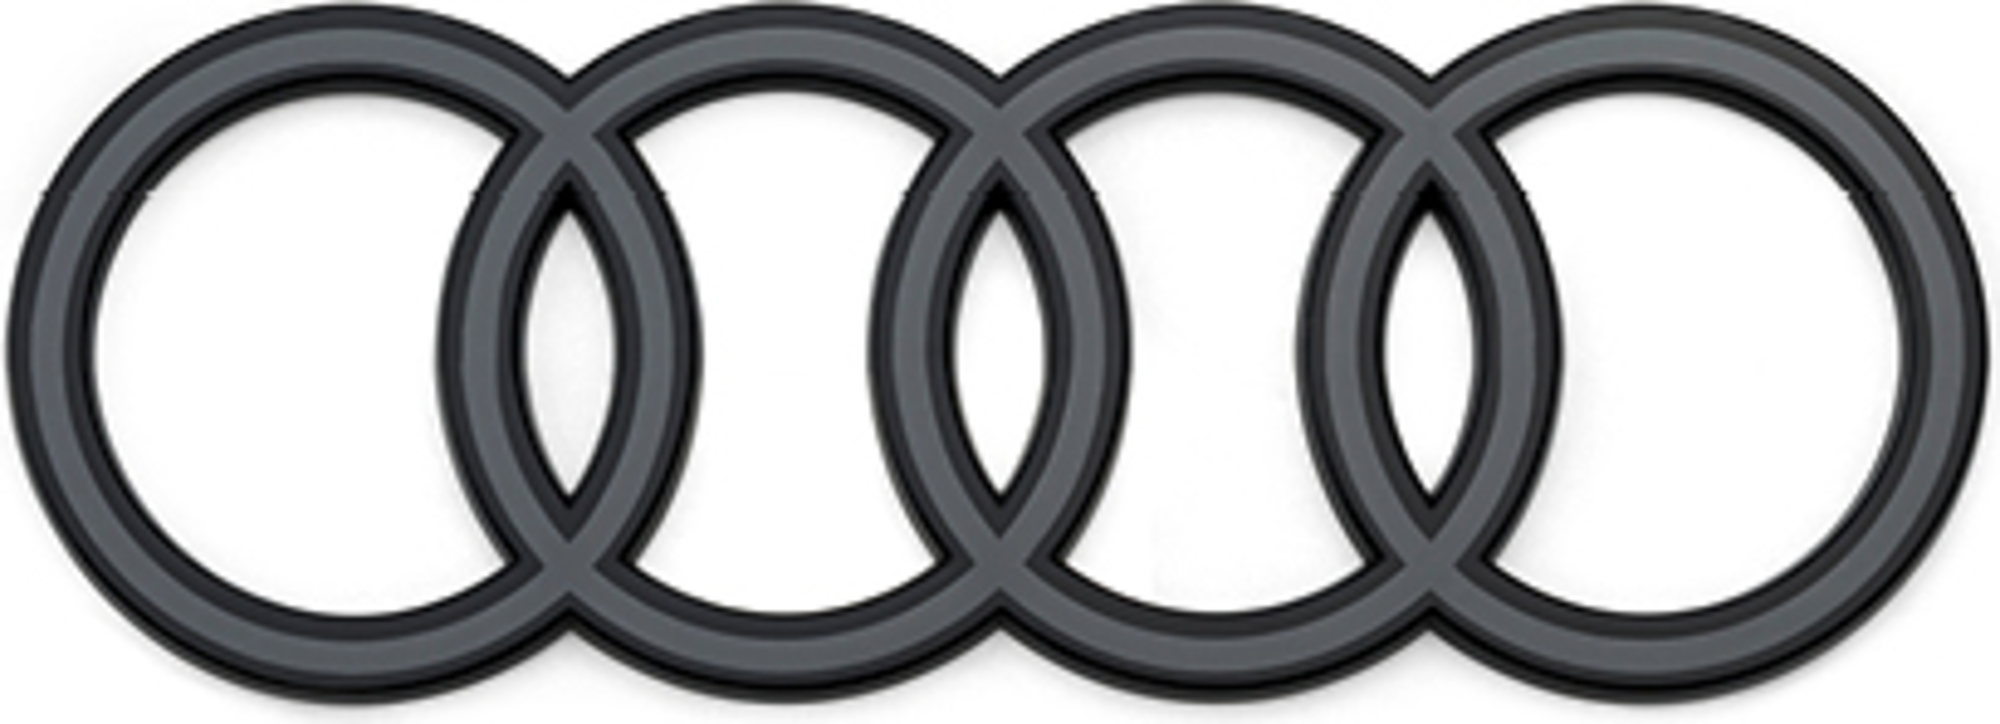 Audi - Anneaux Audi en noir, arrière